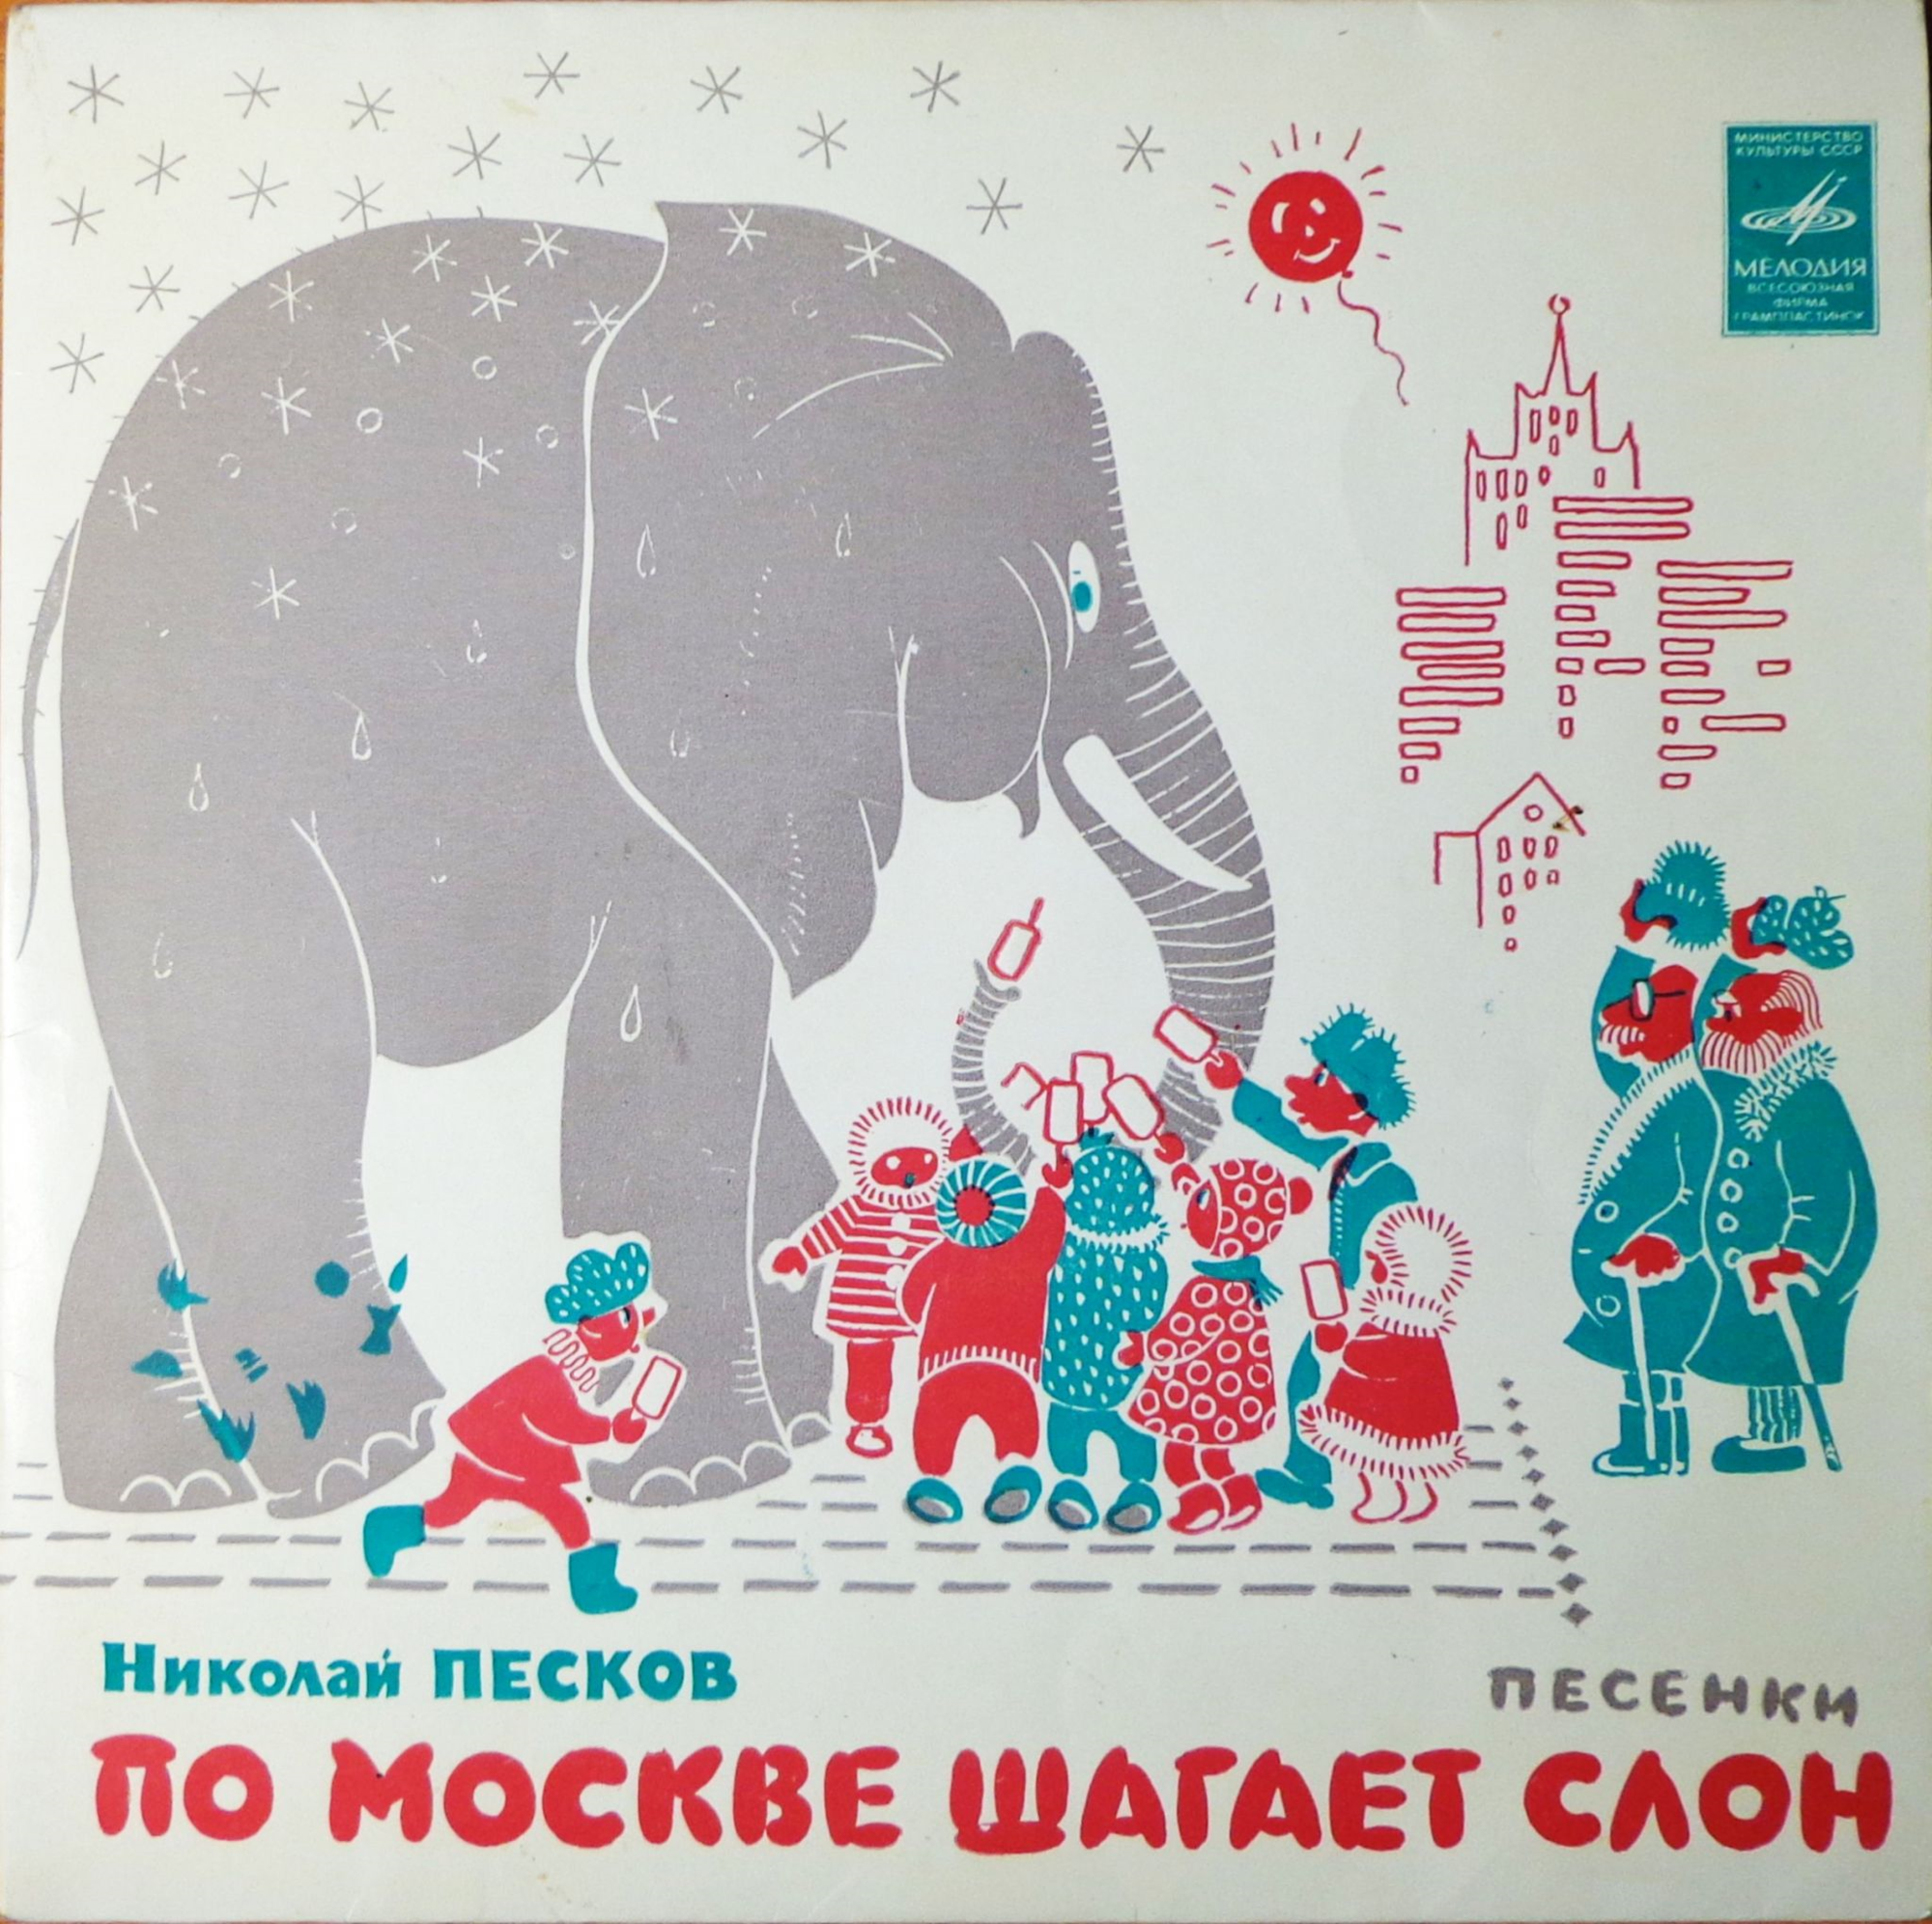 Николай Песков (р.1937). "По Москве шагает слон" (Песенки)